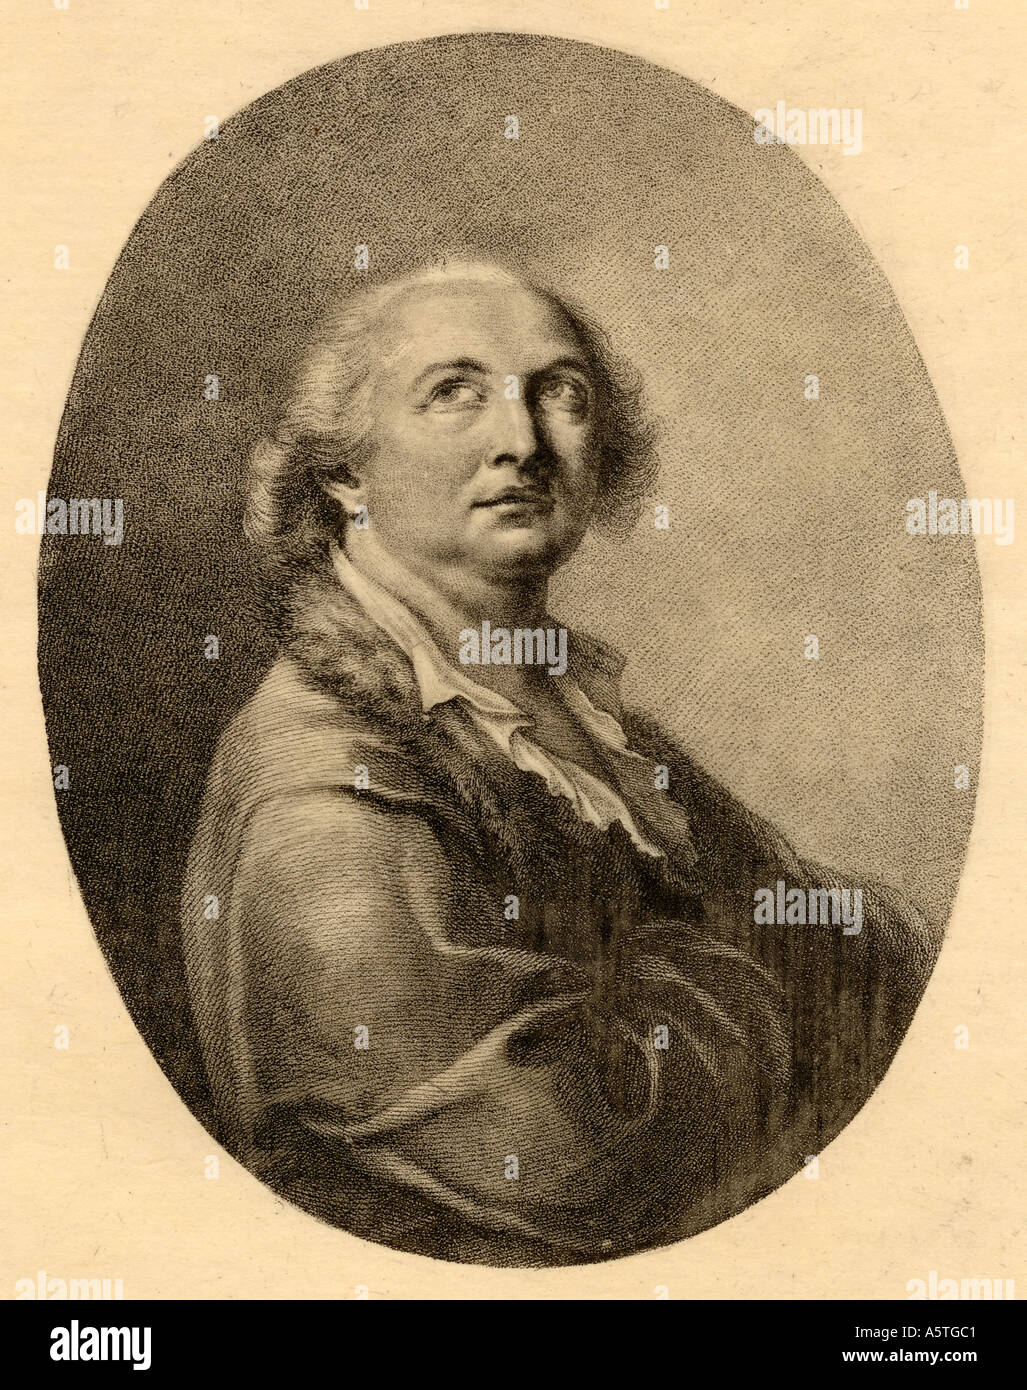 Count Alessandro di Cagliostro, aka Guiseppe Balsamo or Joseph Bálsamo, 1743 - 1795. Italian occultist, adventurer, magician and freemason. Stock Photo